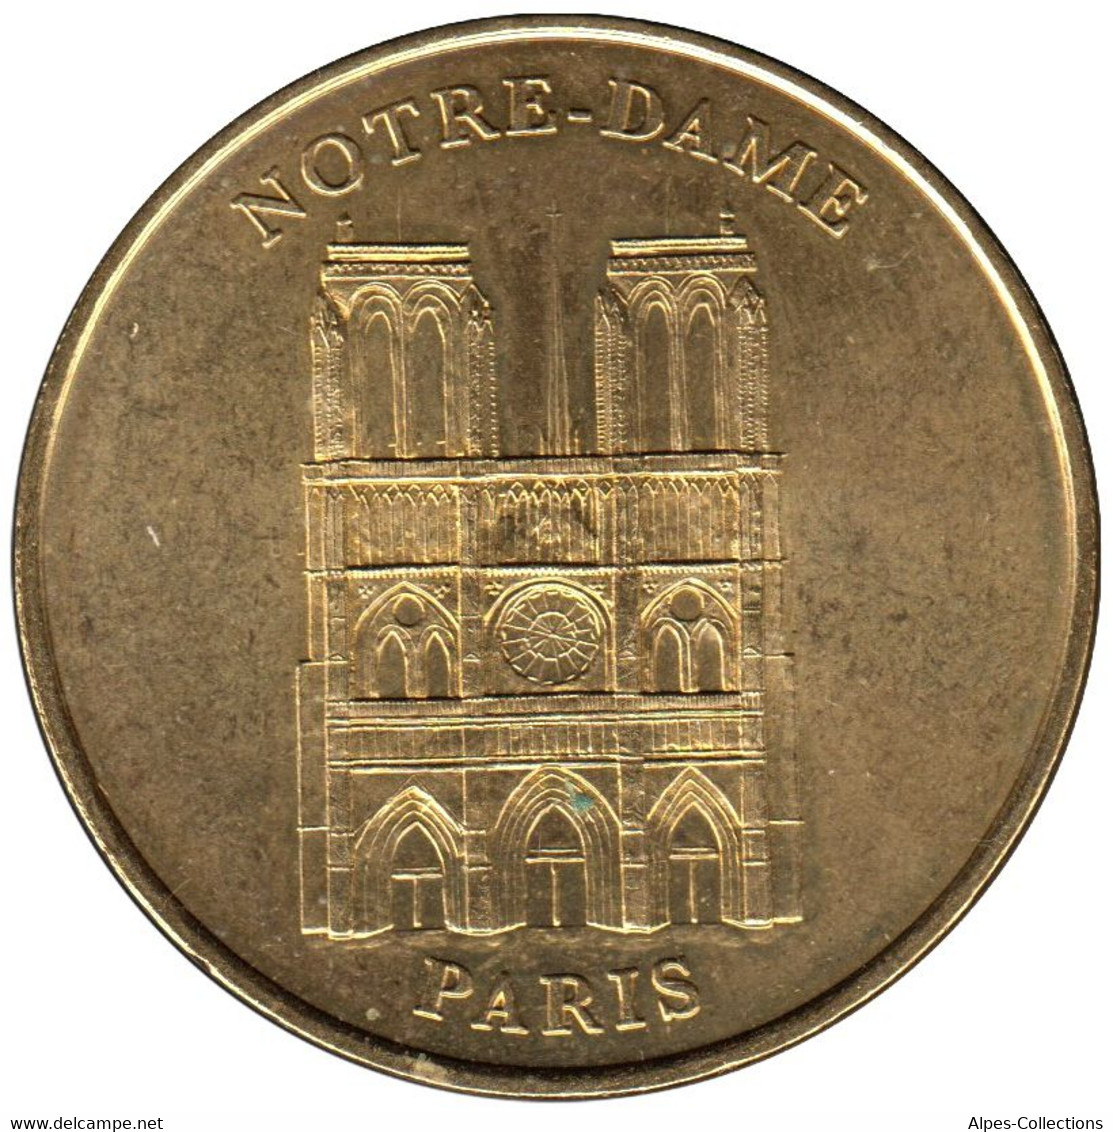 75-0239 - JETON TOURISTIQUE MDP - Paris - Notre-Dame Façade Face Simple - 1998.2 - Non-datés